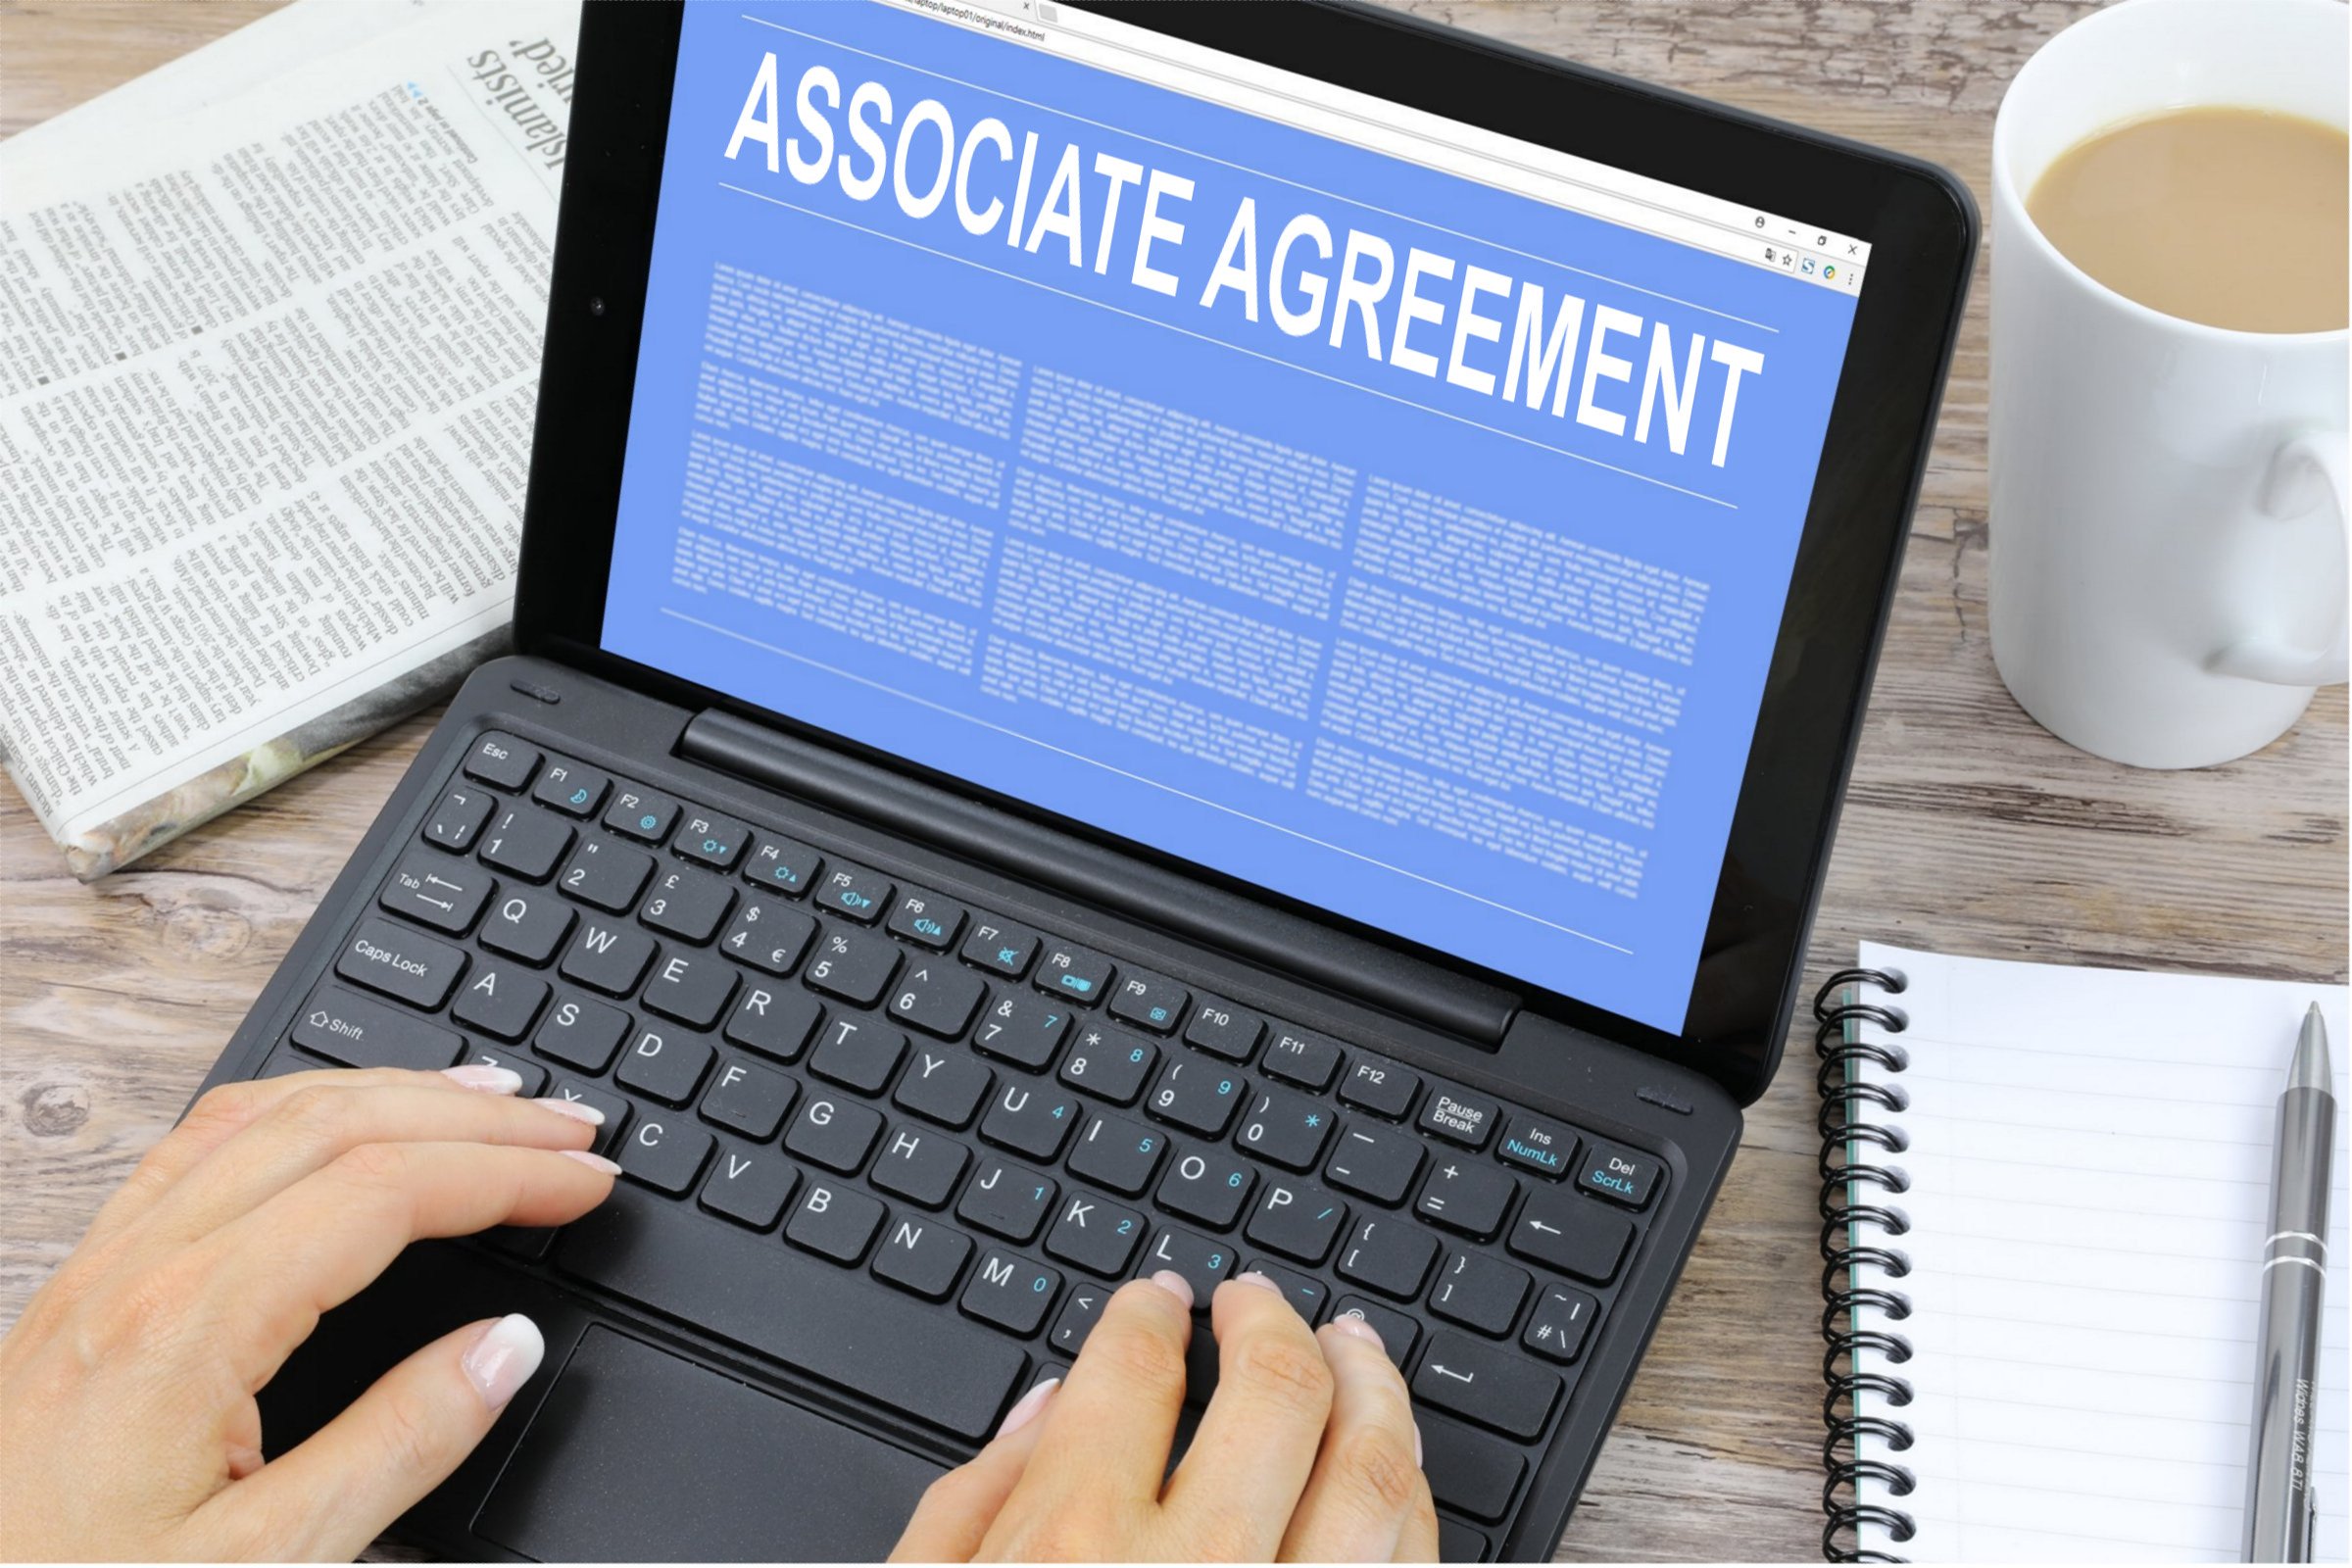 Associate Agreement